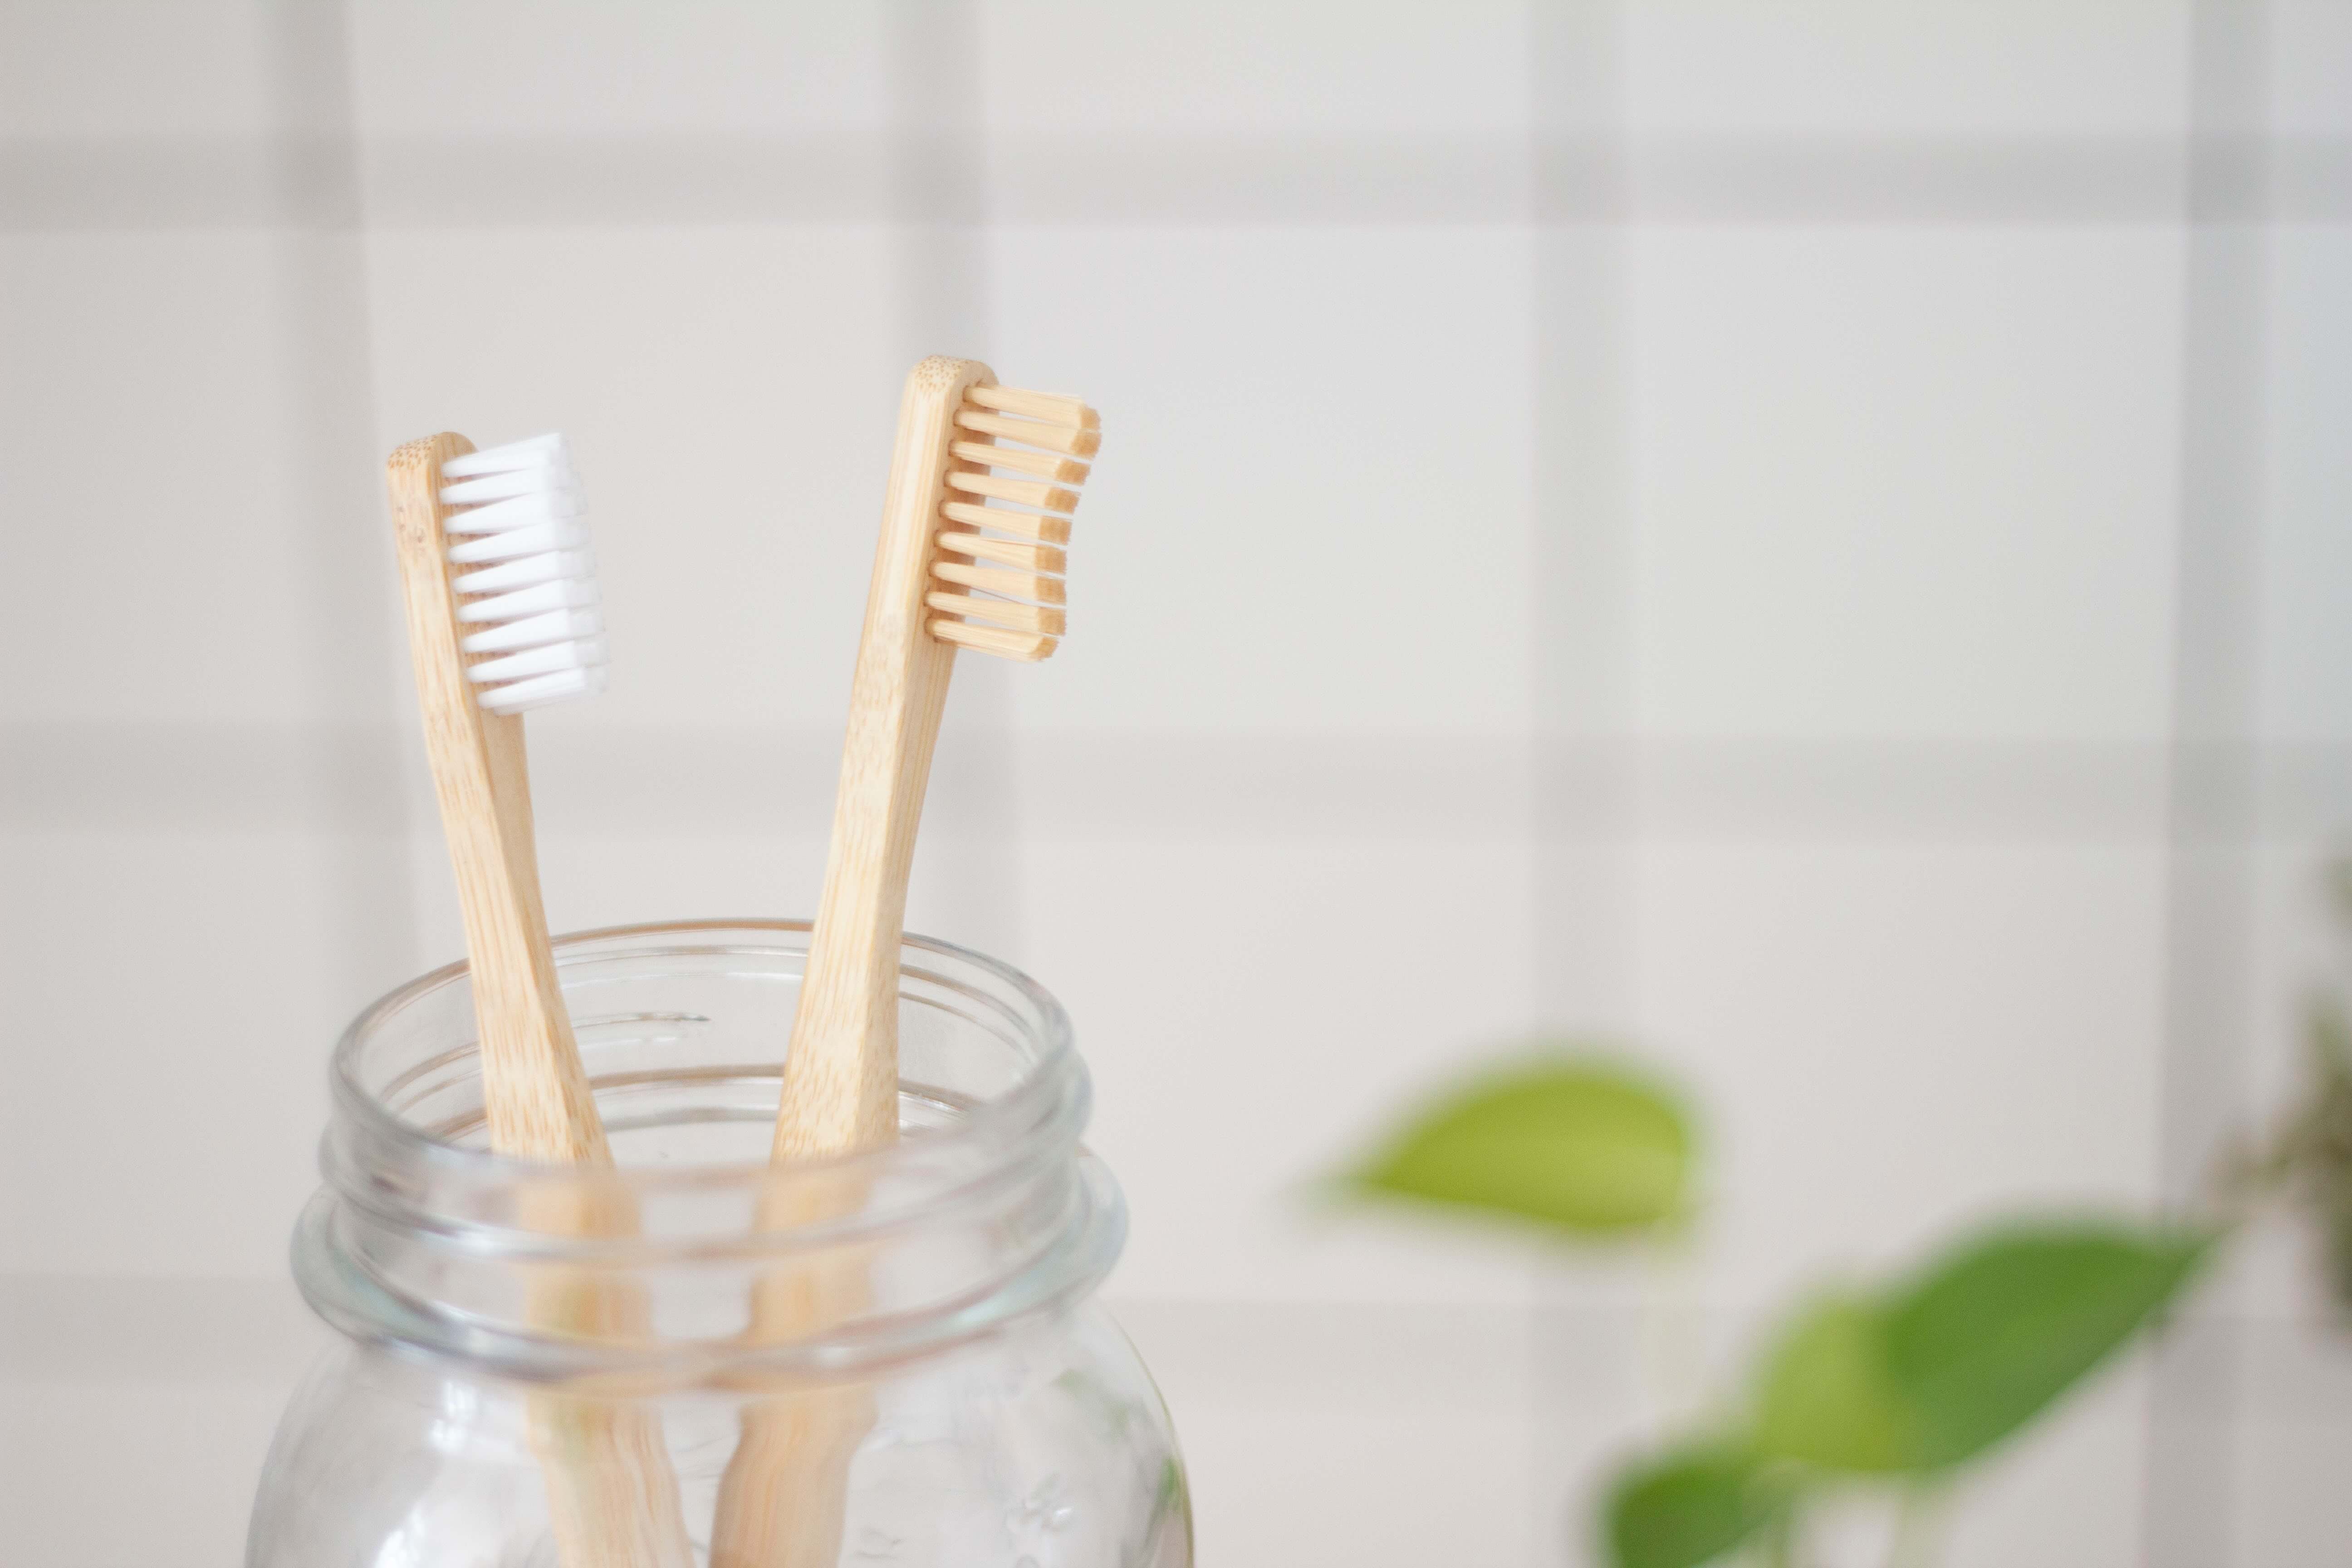 Featured image for “Borsta tänder på bebis med bra tandborste”